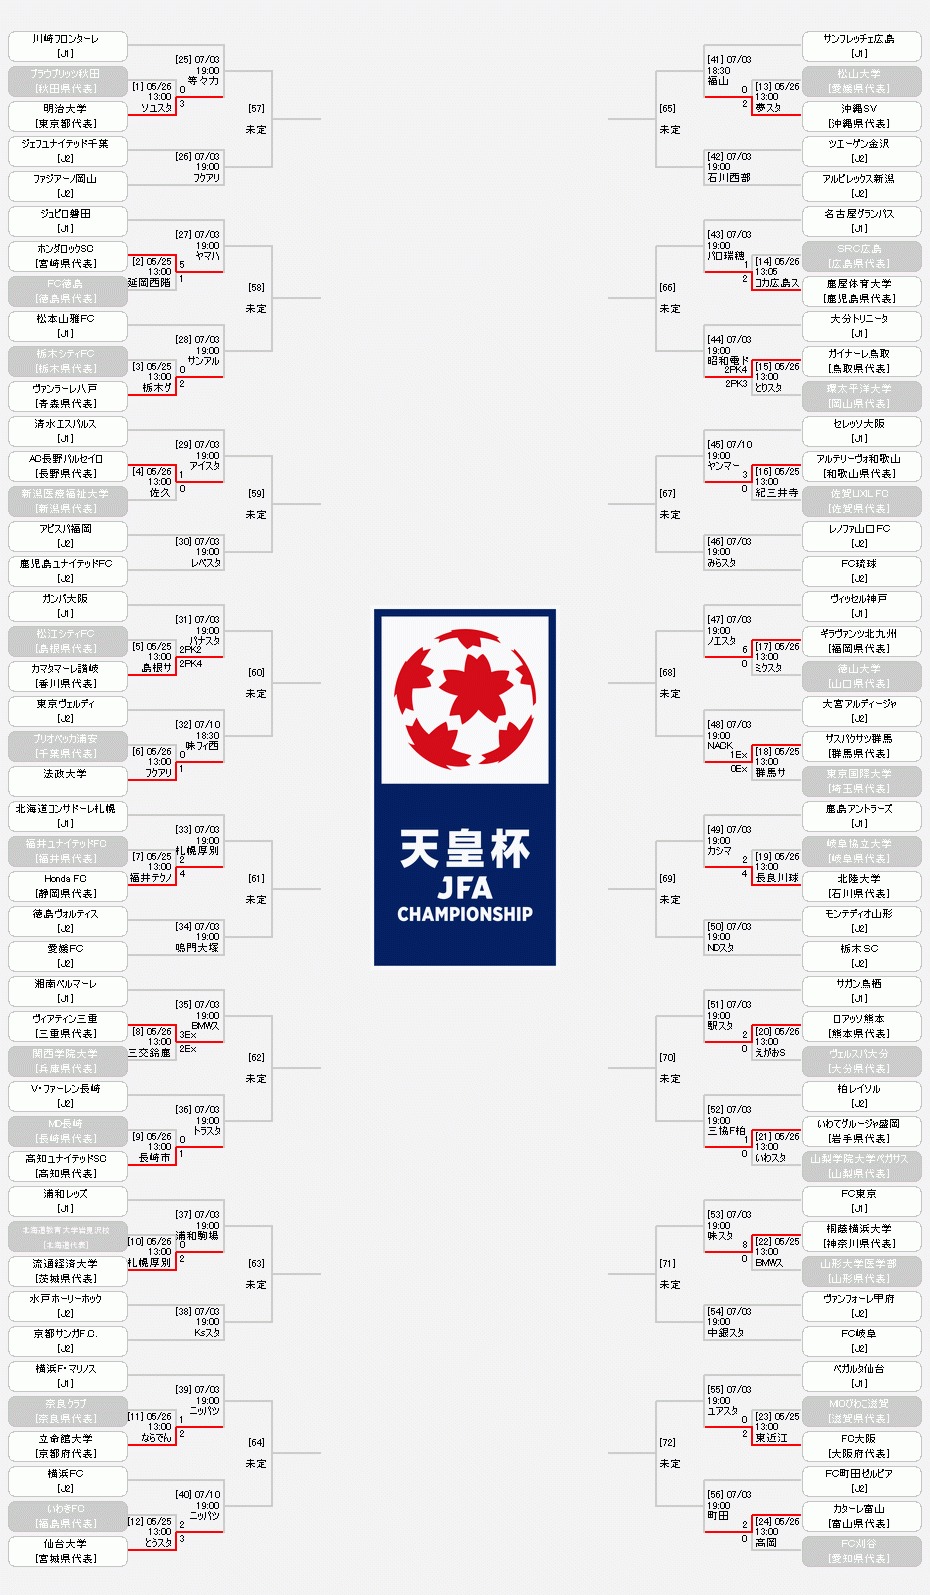 『天皇杯 JFA 第99回全日本サッカー選手権大会』のトーナメント表